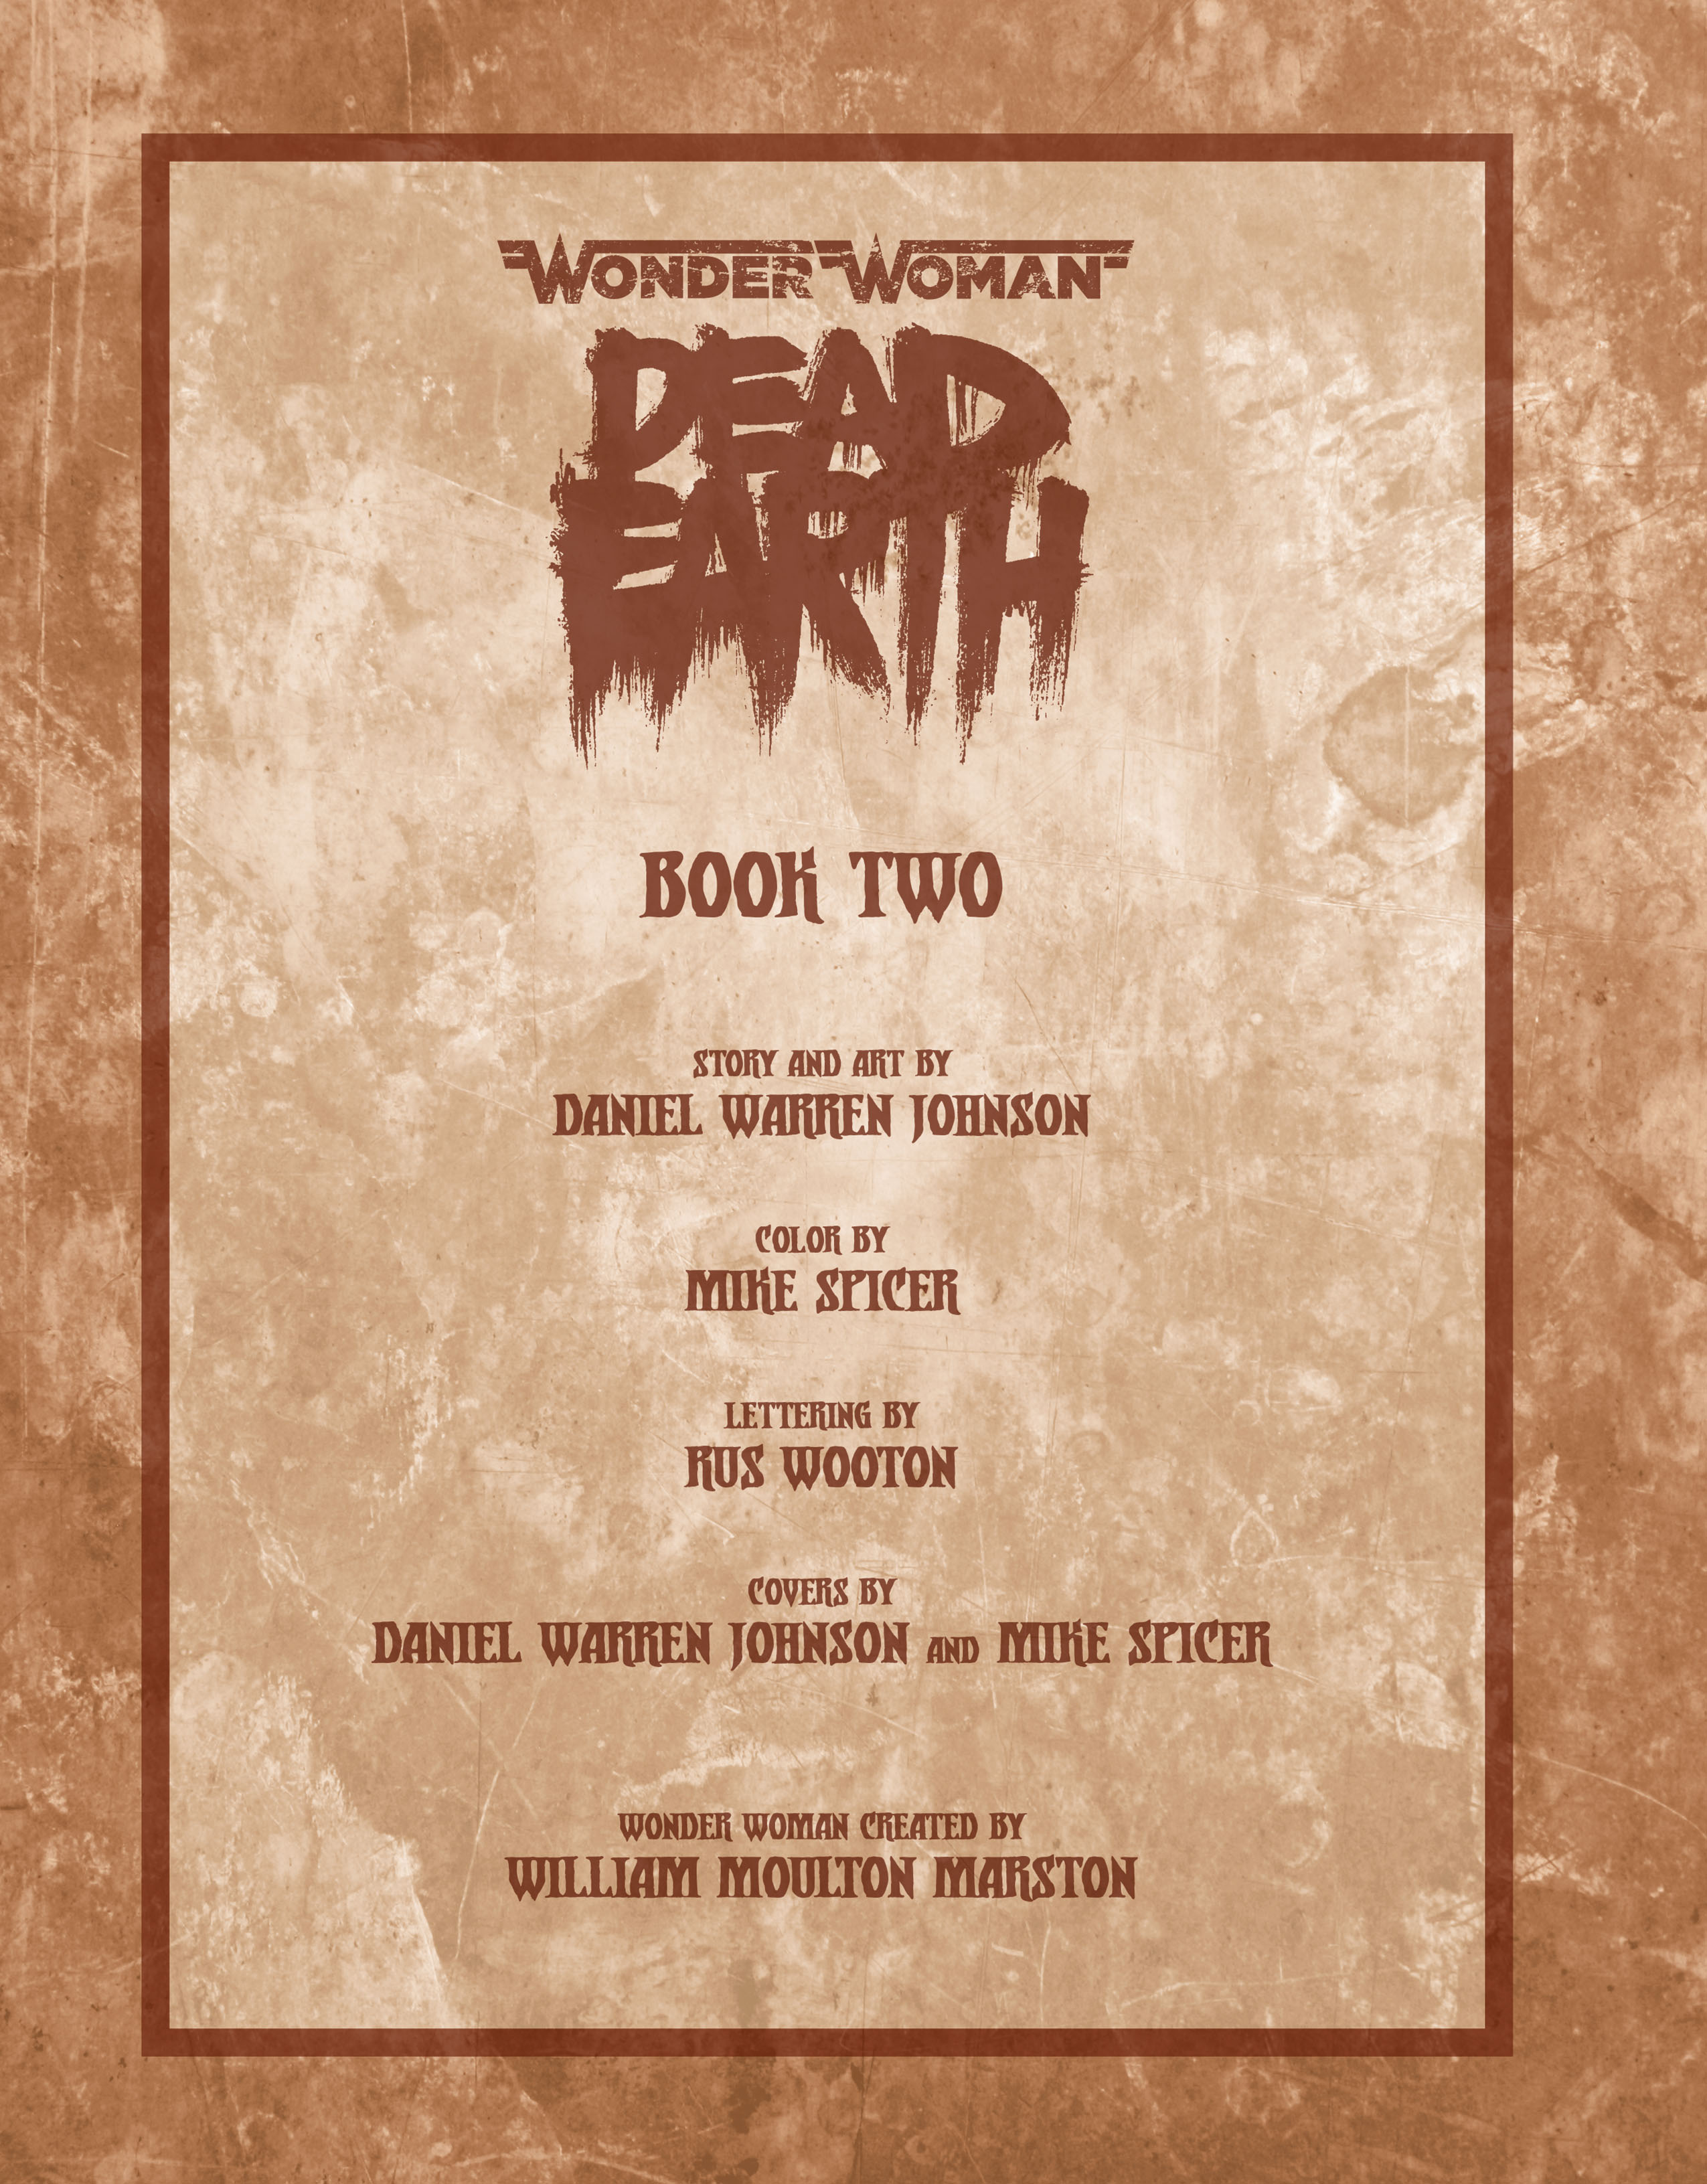 Read online Wonder Woman: Dead Earth comic -  Issue #2 - 2